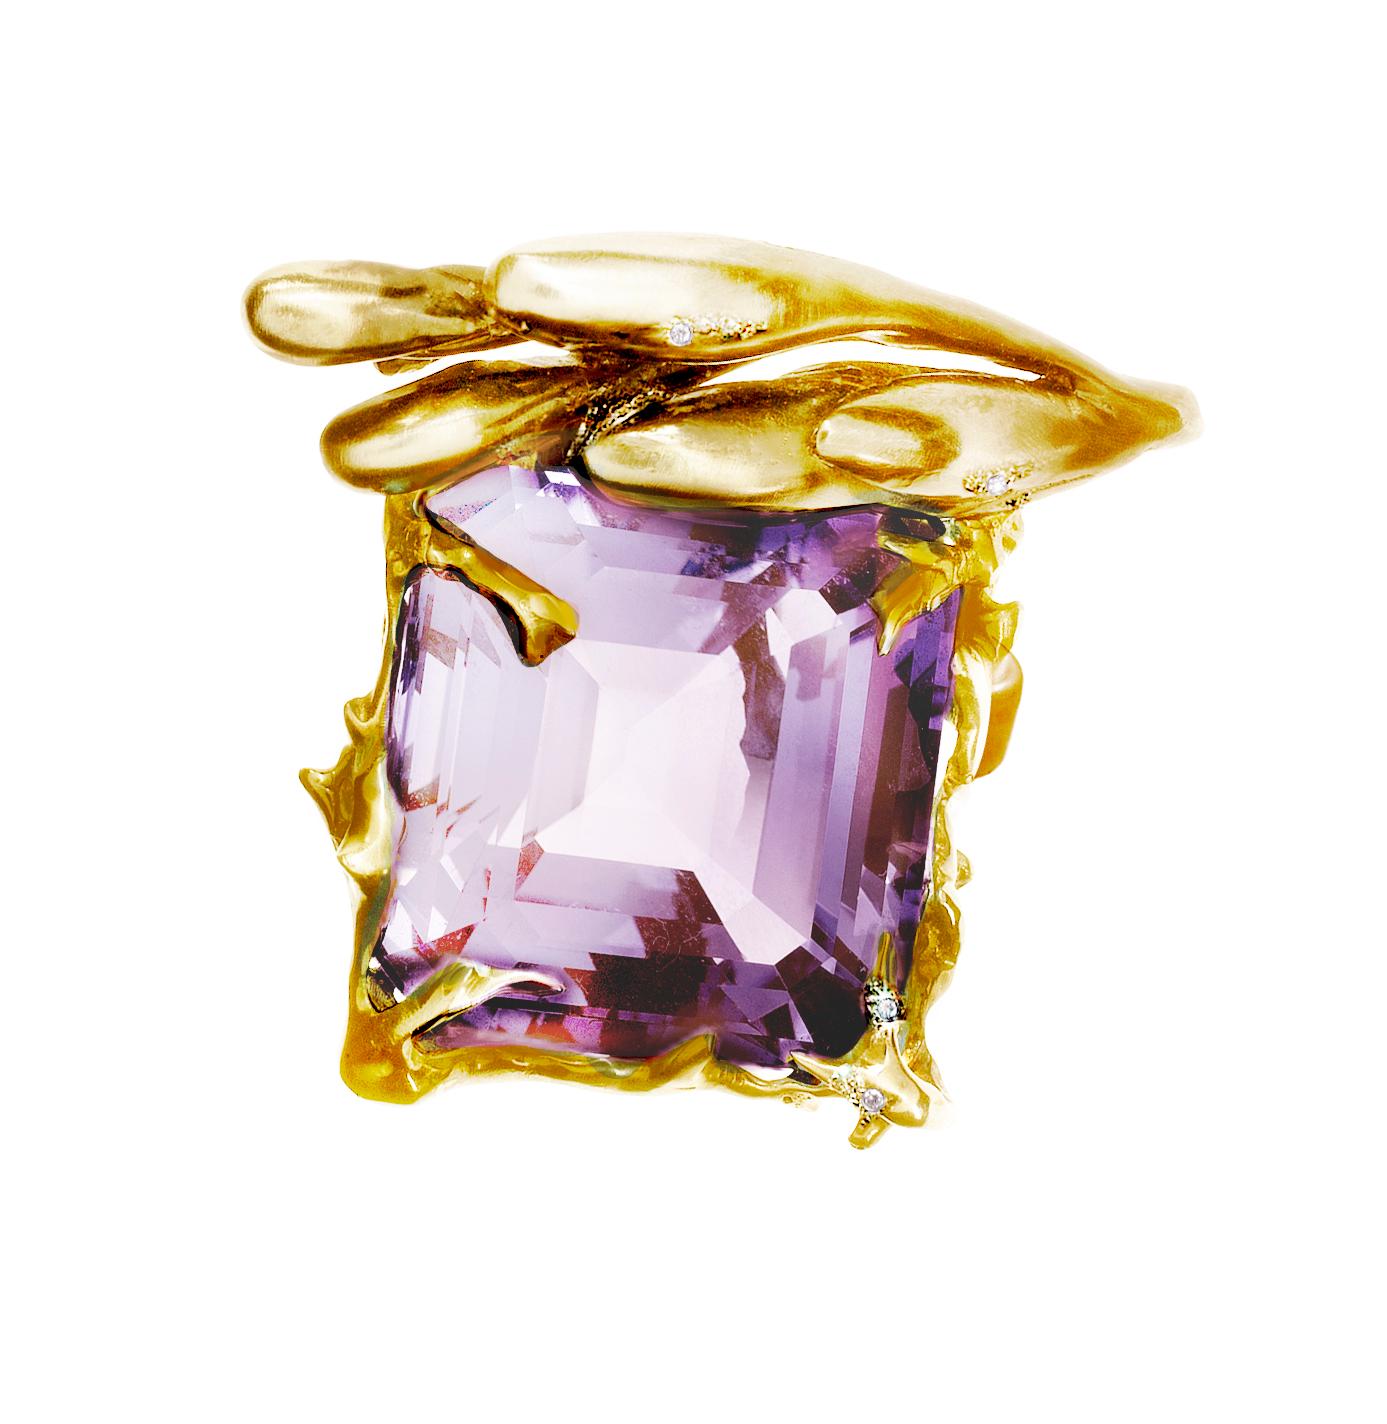 Ce collier pendentif artisanal Fairy Tale est en or jaune 18 carats et comporte des diamants et une énorme améthyste de taille coussin antique (26x21 mm). La taille du pendentif est d'environ 3 cm. Présenté dans Vogue UA, il s'agit d'un bijou de